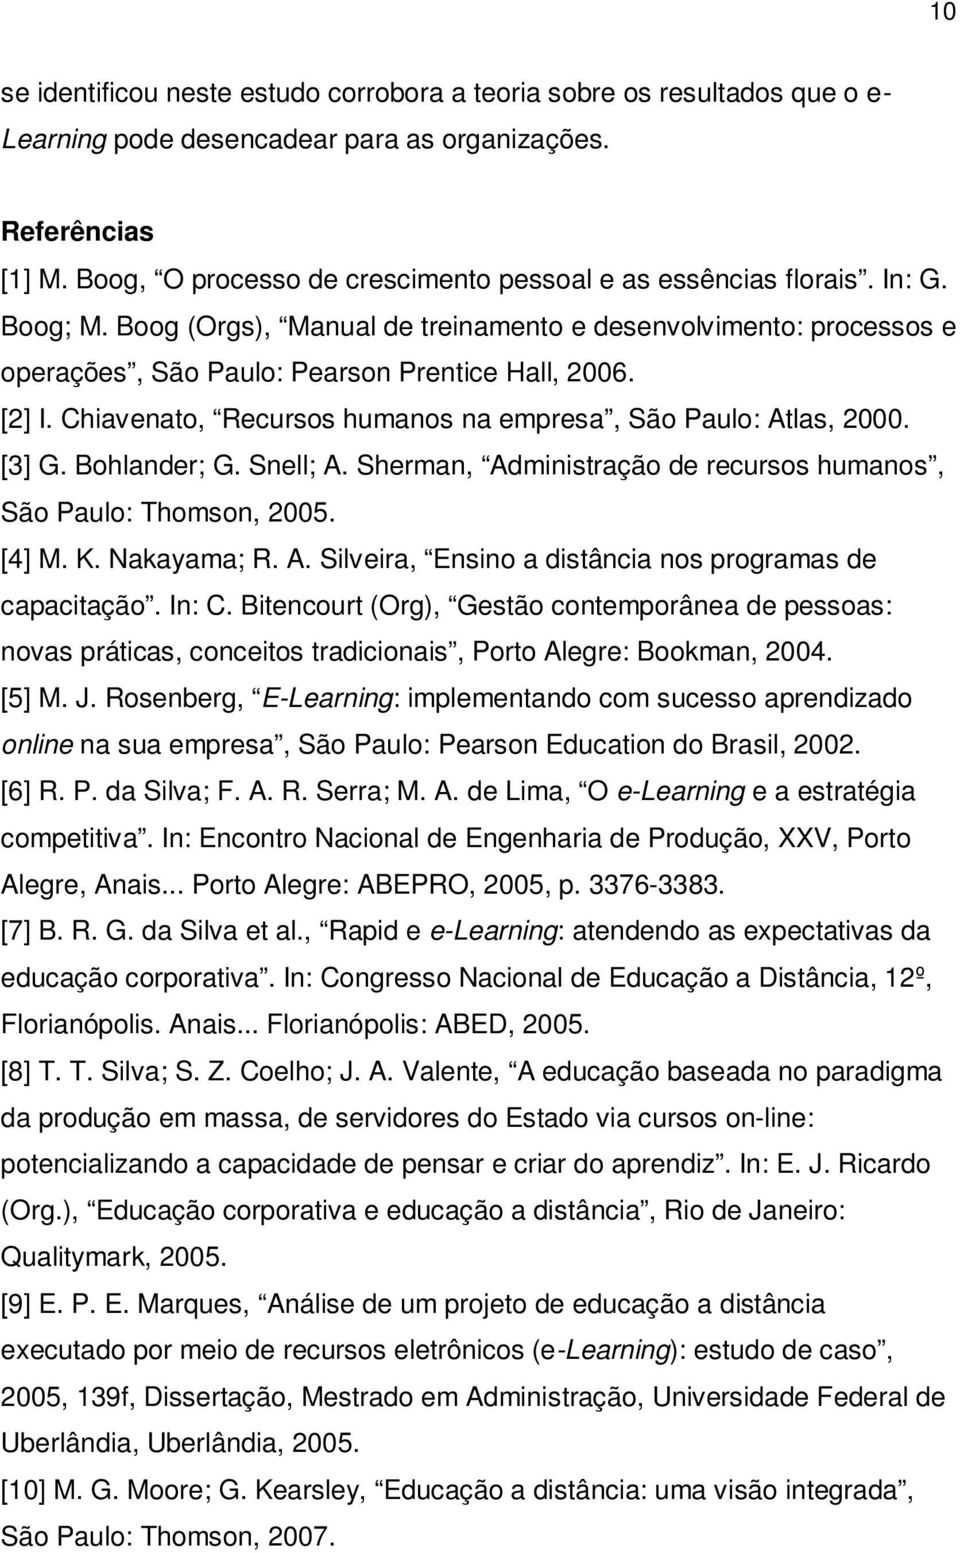 [2] I. Chiavenato, Recursos humanos na empresa, São Paulo: Atlas, 2000. [3] G. Bohlander; G. Snell; A. Sherman, Administração de recursos humanos, São Paulo: Thomson, 2005. [4] M. K. Nakayama; R. A. Silveira, Ensino a distância nos programas de capacitação.